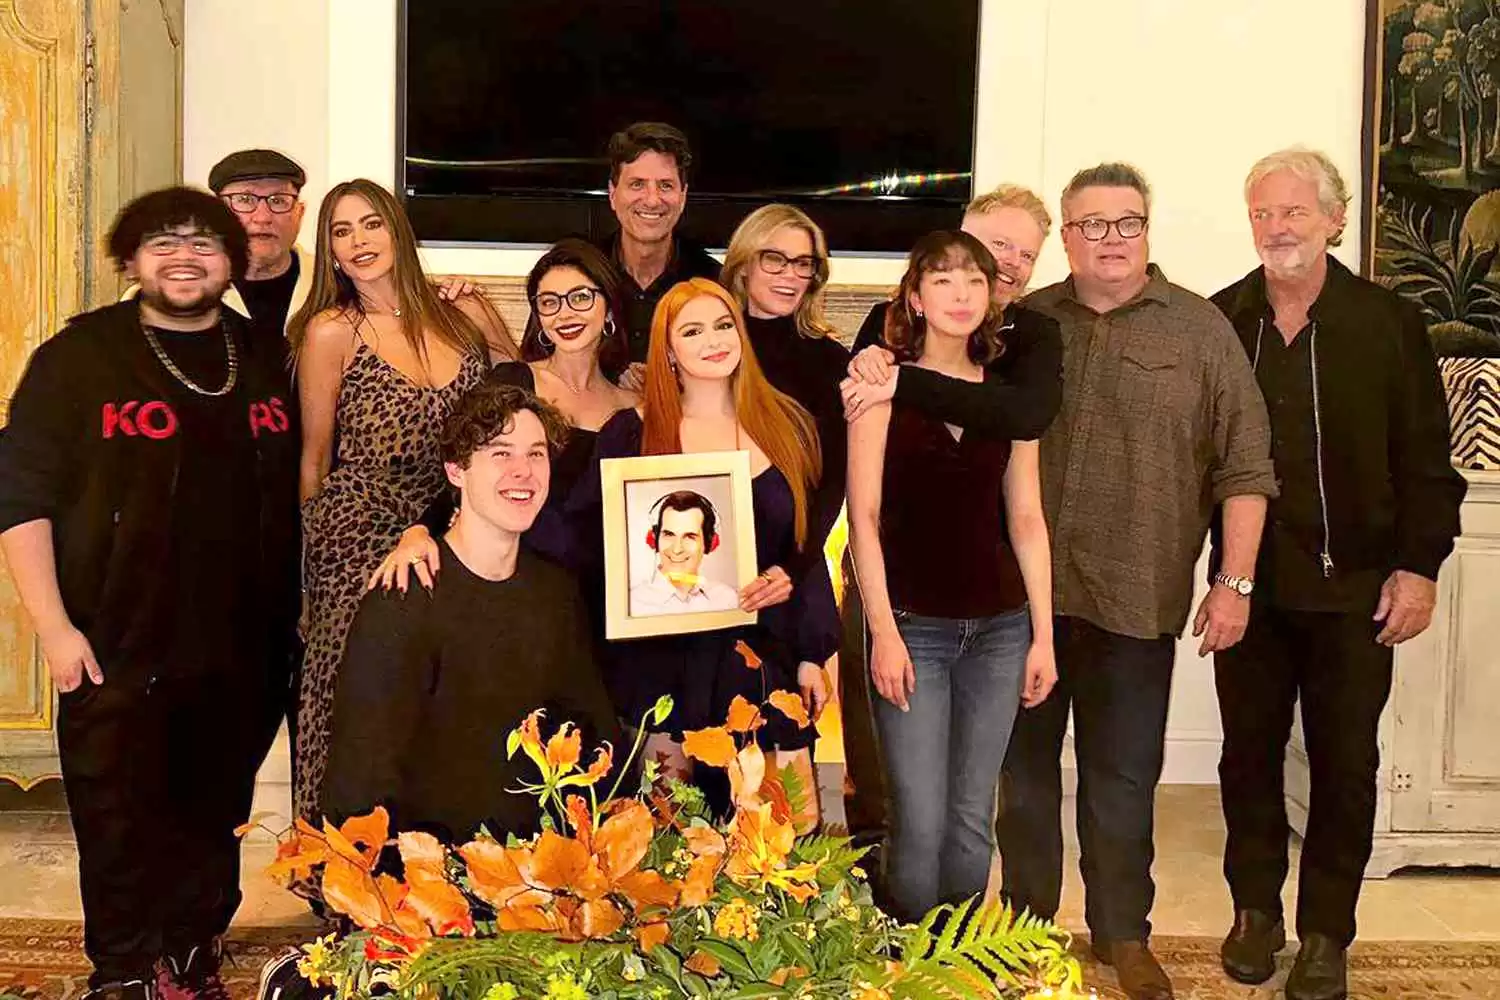 Sofía Vergara Organizes First Modern Family Reunion - See Photos